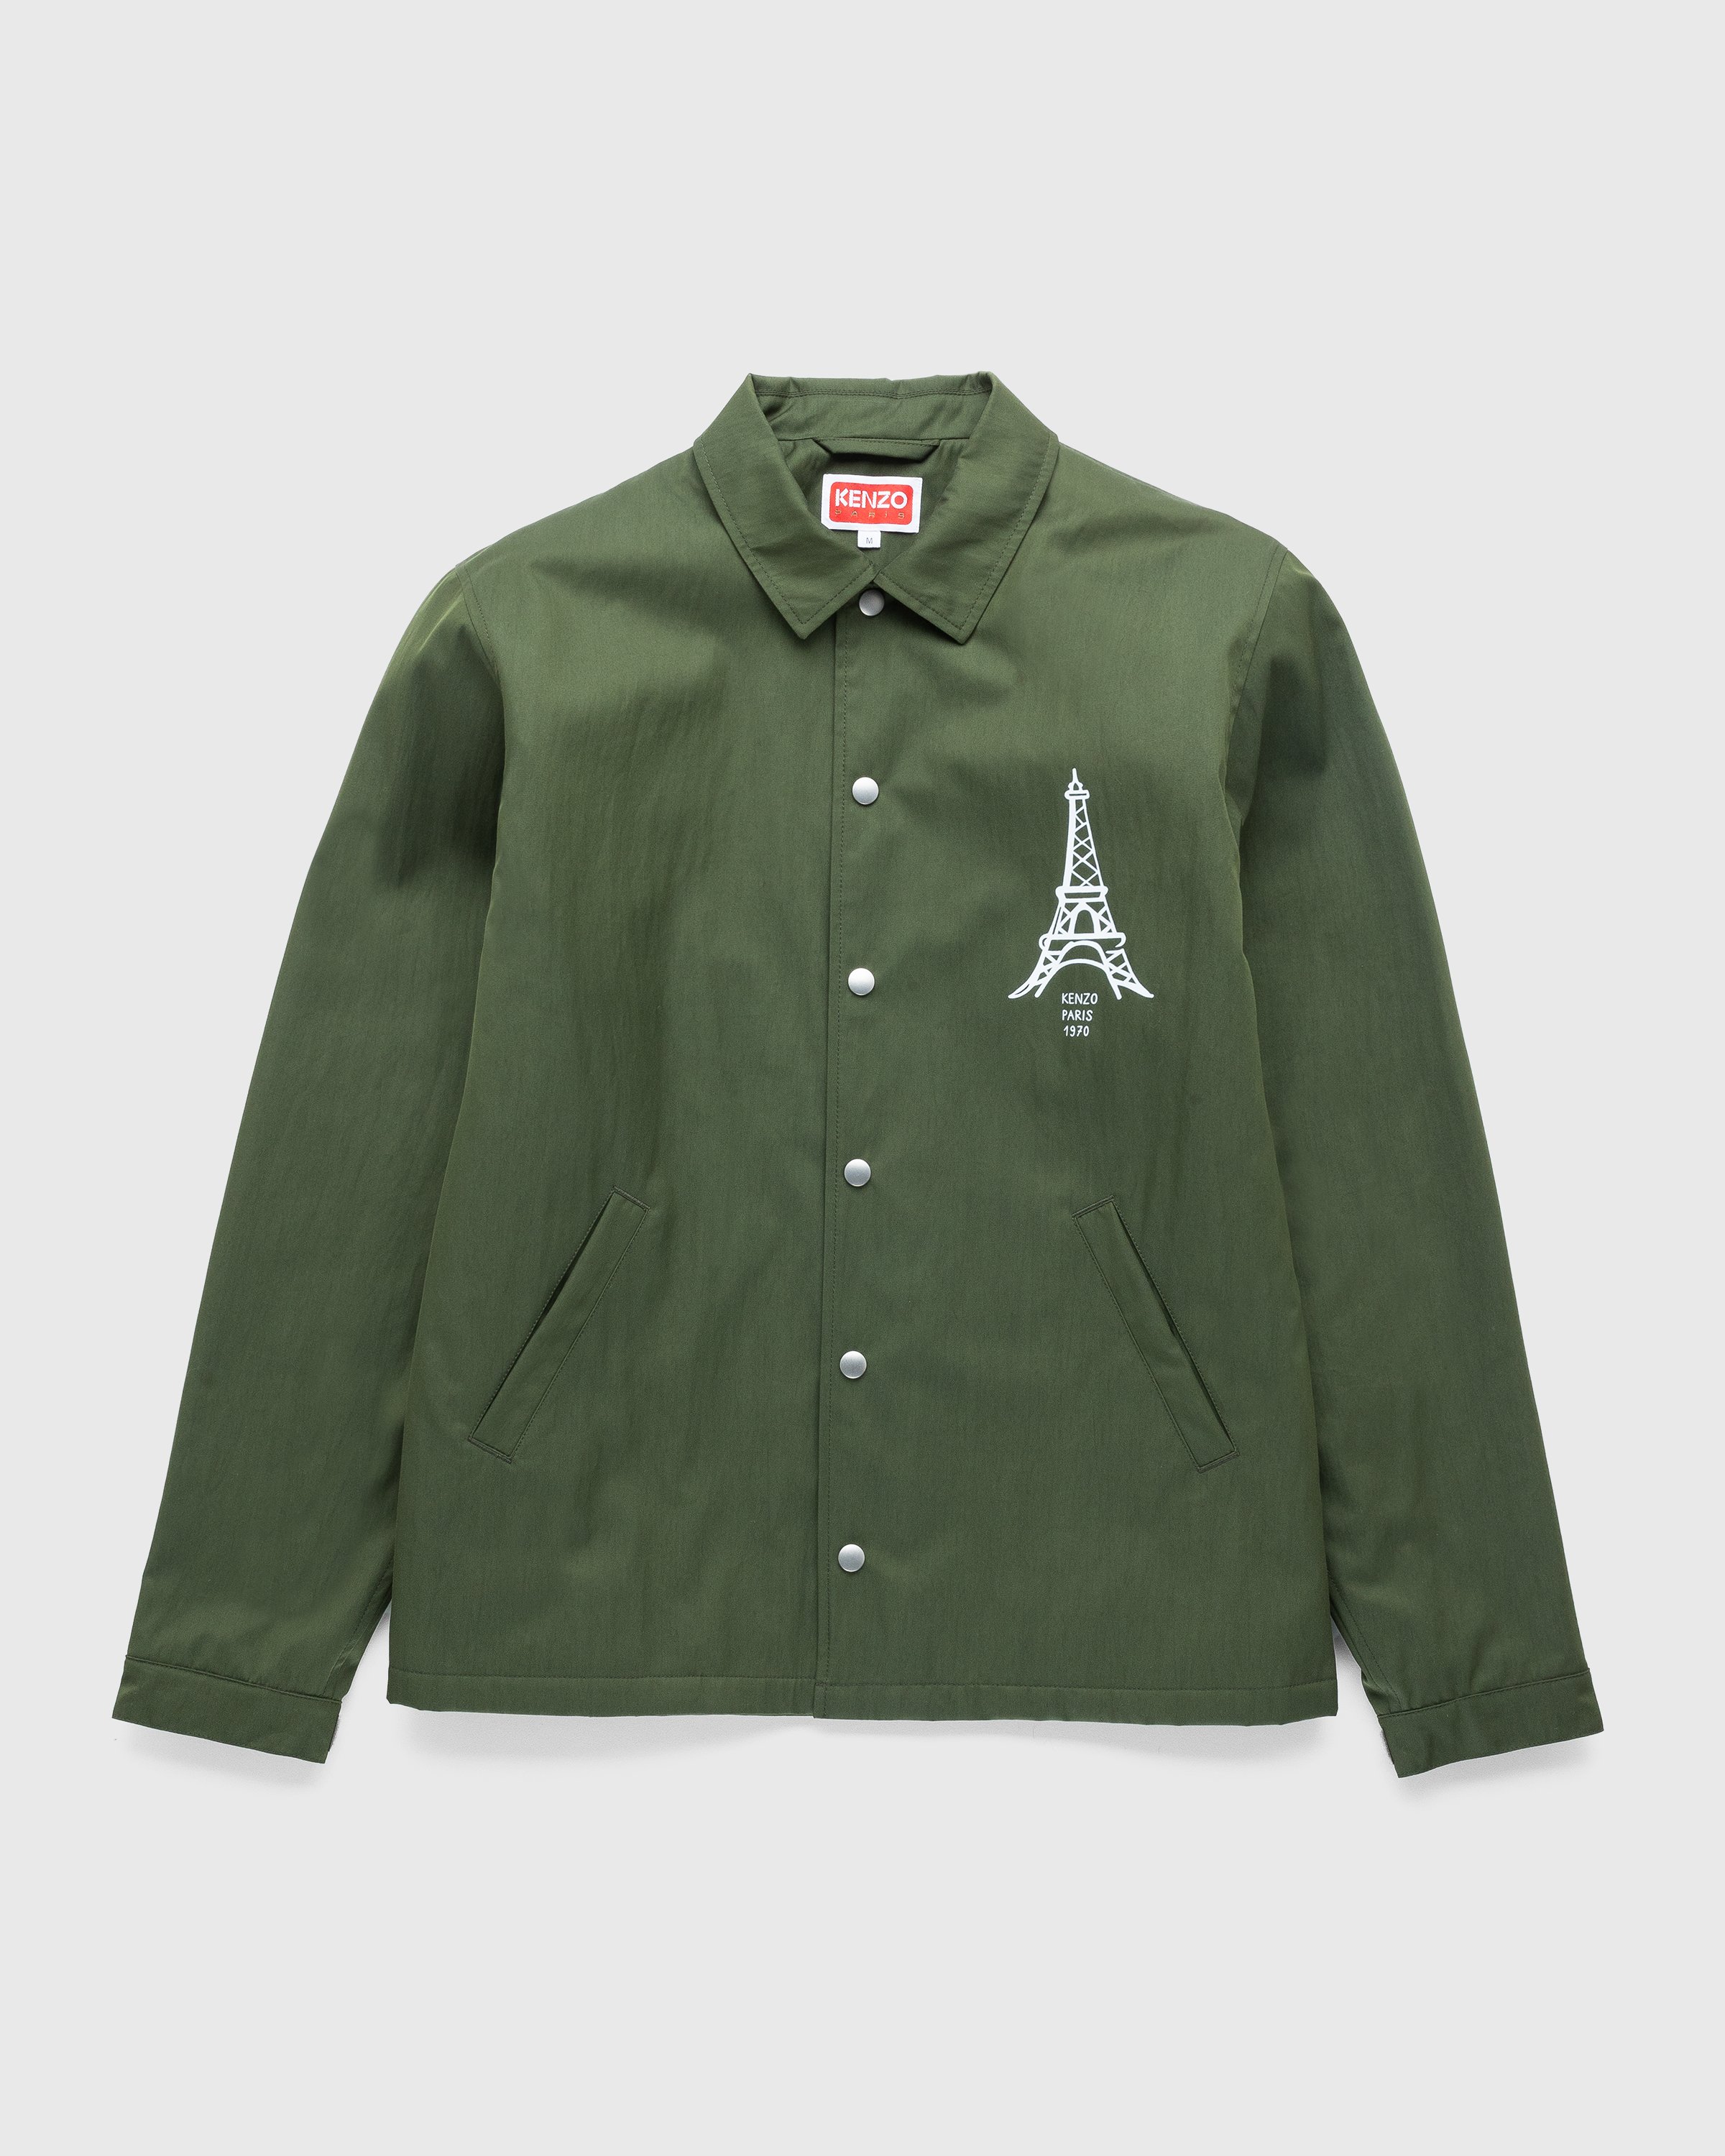 Kenzo - Bomber Jacket Dark Khaki - Clothing - Green - Image 1